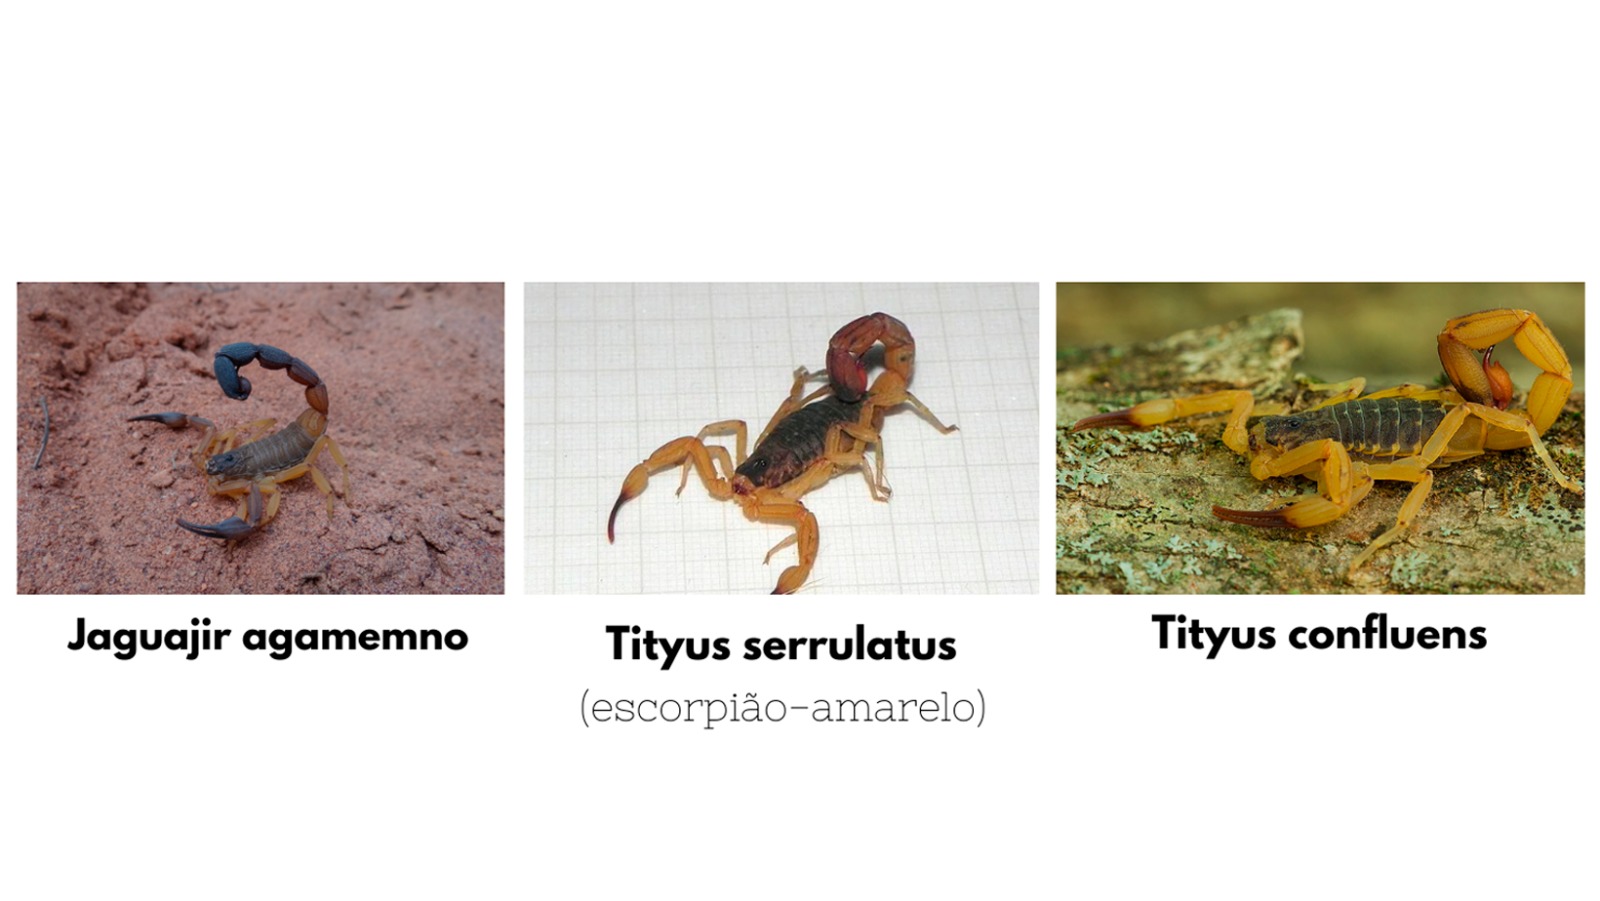 O Tityus serrulatus (imagem do meio) é muito parecido com outra espécie de escorpião, o Tityus confluens, porém o serrulatus apresenta características distintas, como o tronco escuro e uma mancha escura em tons avermelhados próximo ao ferrão